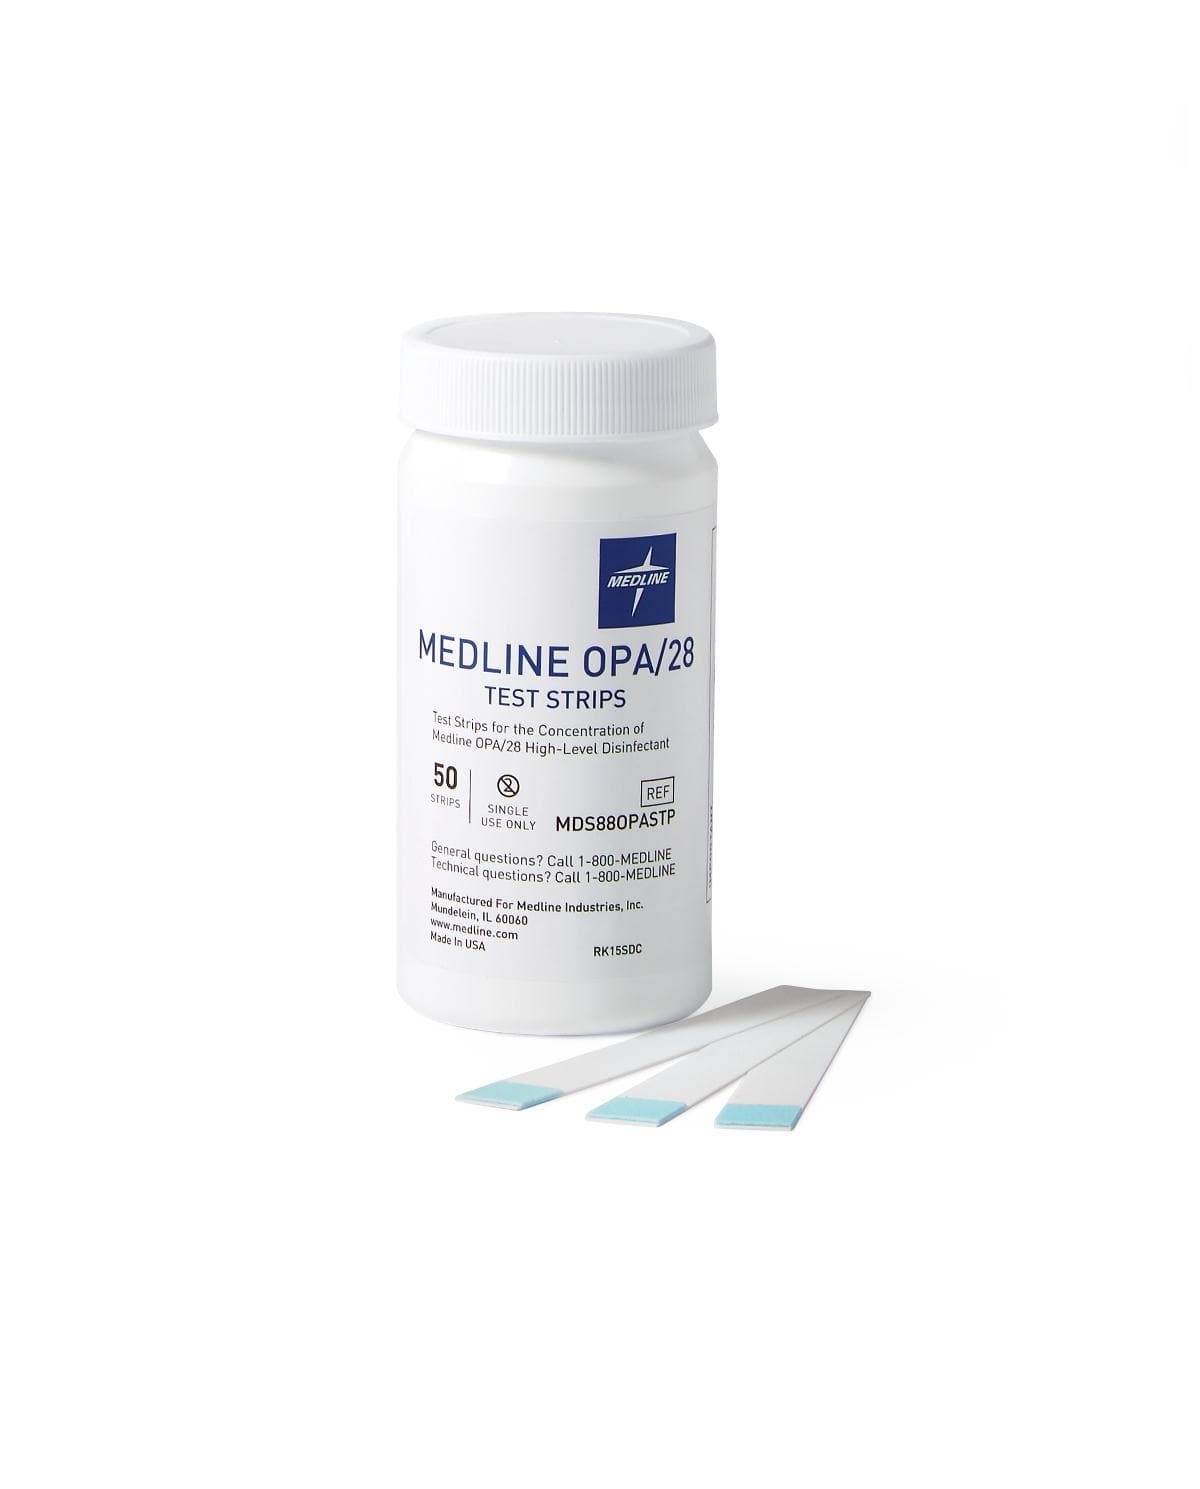 Medline OPA Disinfectant Test Strip - 50 Strips Per Bottle - Senior.com Test Strips